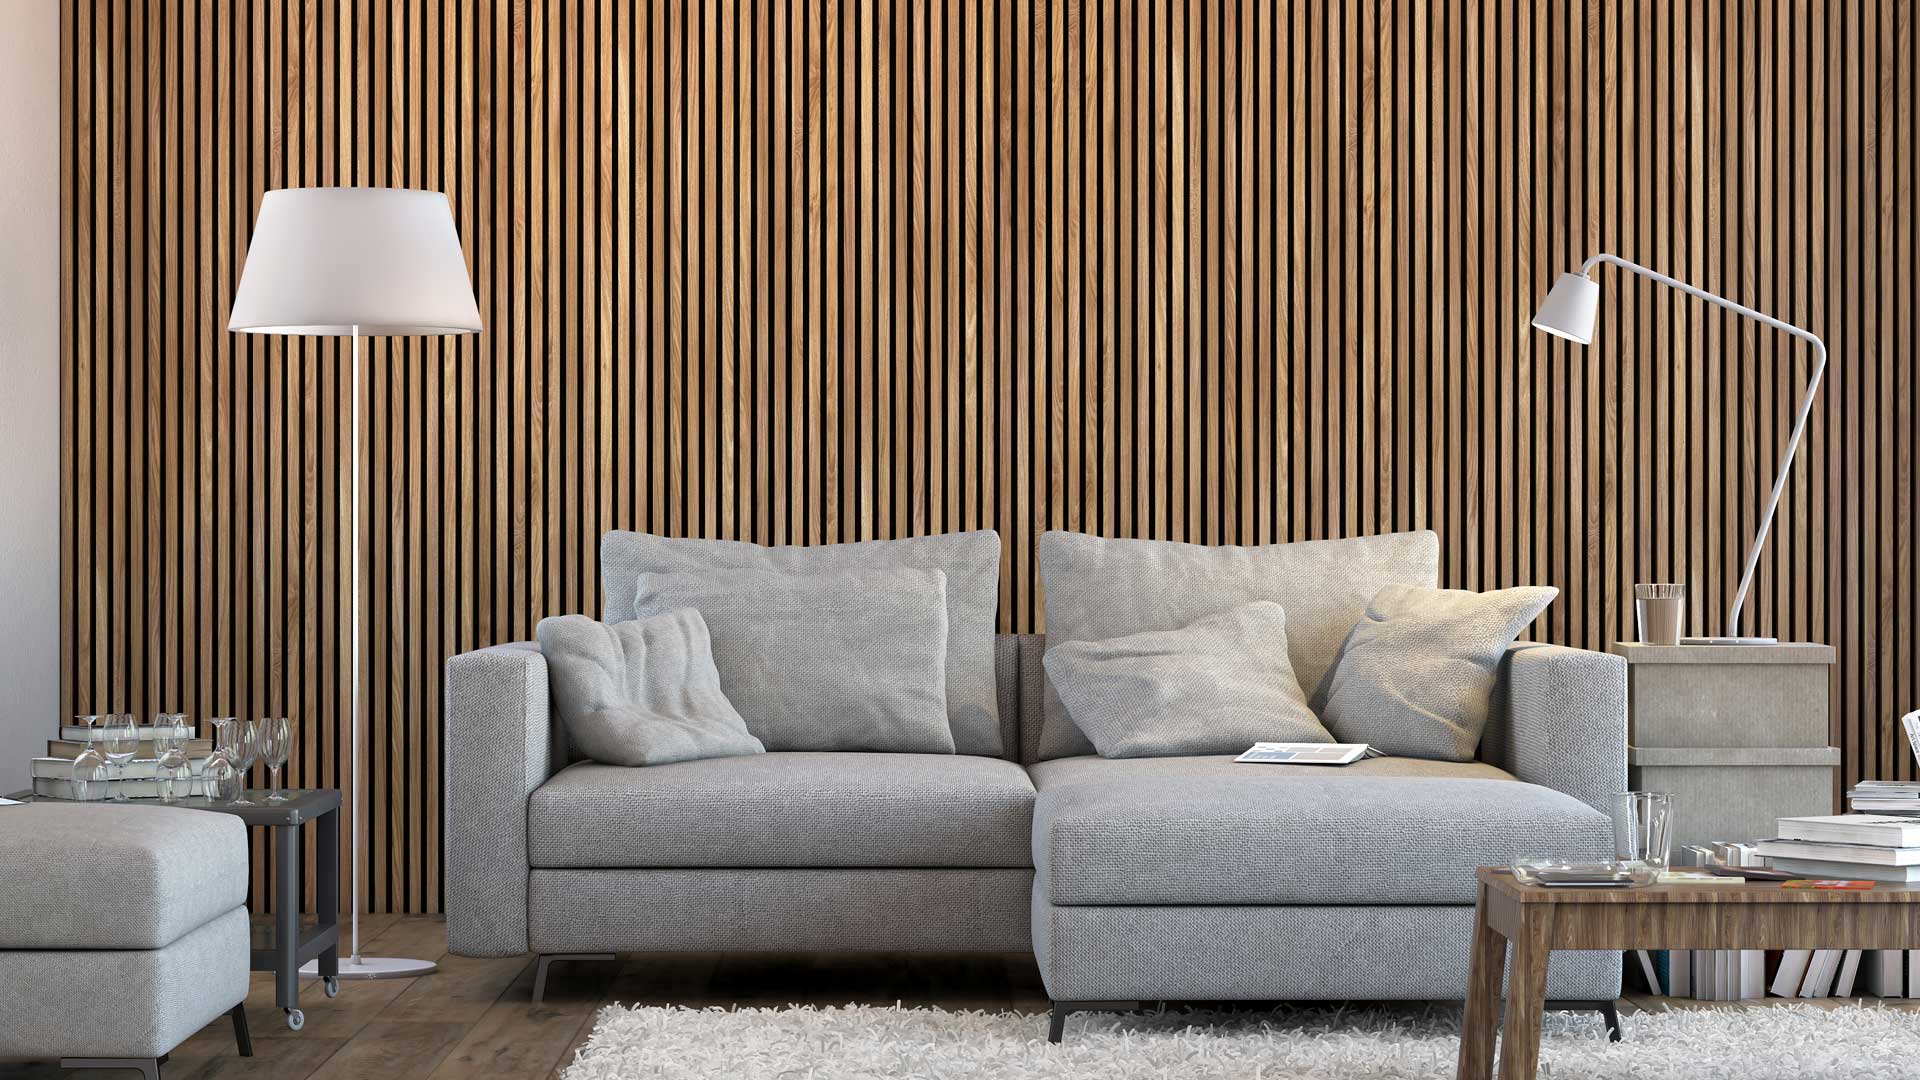 Acoustic Slat wall panels on felt - 240 x 60cm - DecorMania